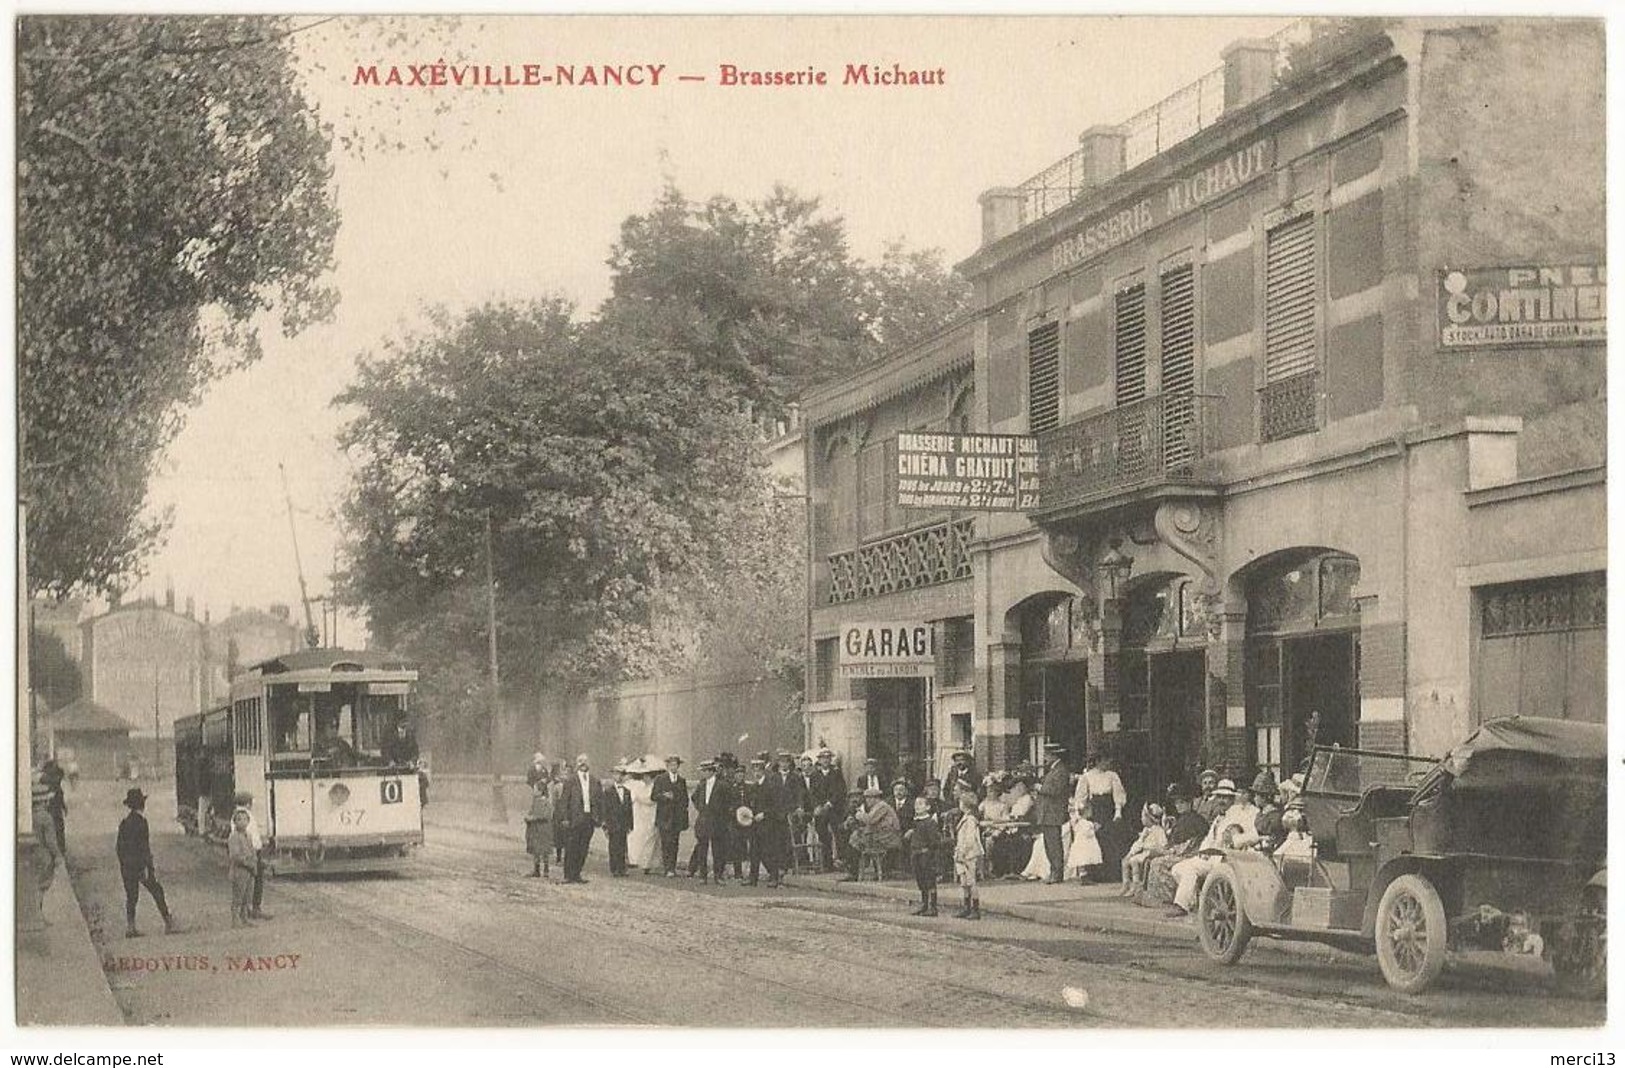 MAXEVILLE-NANCY (54) – Brasserie Michaut. Extérieur, Très Animé (tramway, Voiture). Editeur Gedovius, Nancy. - Maxeville